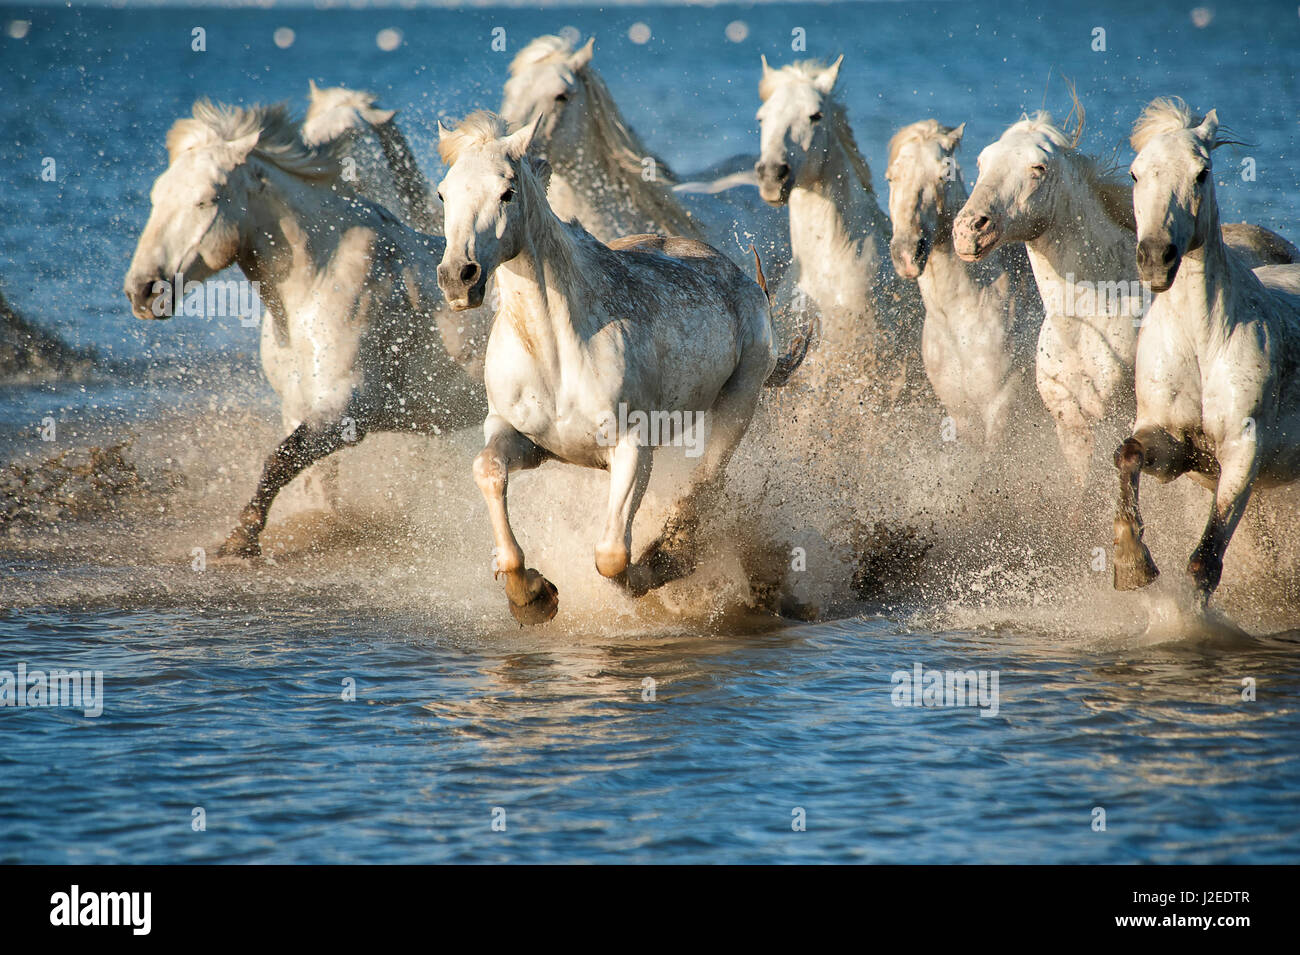 Weisse Pferde der Camargue, Frankreich, im blauen Mittelmeer Wasser laufen Stockfoto